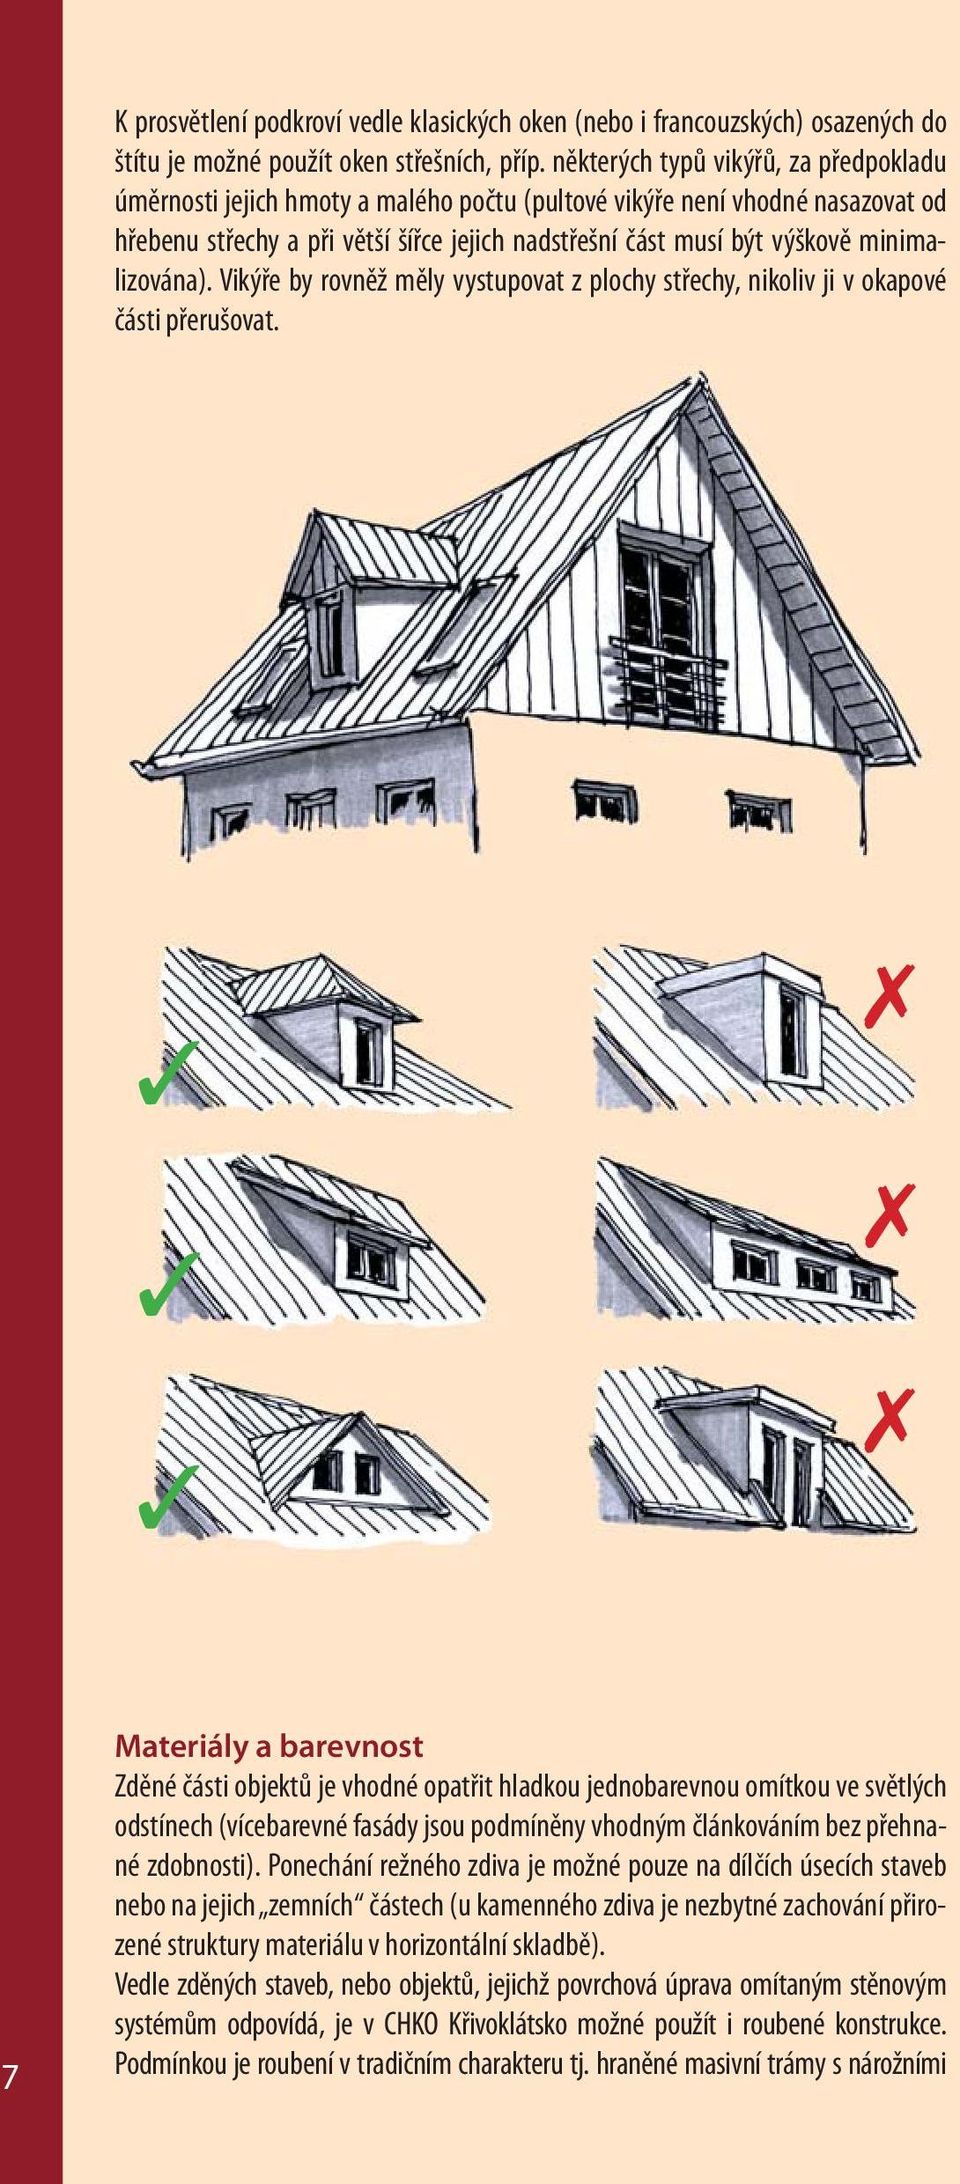 minimalizována). Vikýře by rovněž měly vystupovat z plochy střechy, nikoliv ji v okapové části přerušovat.